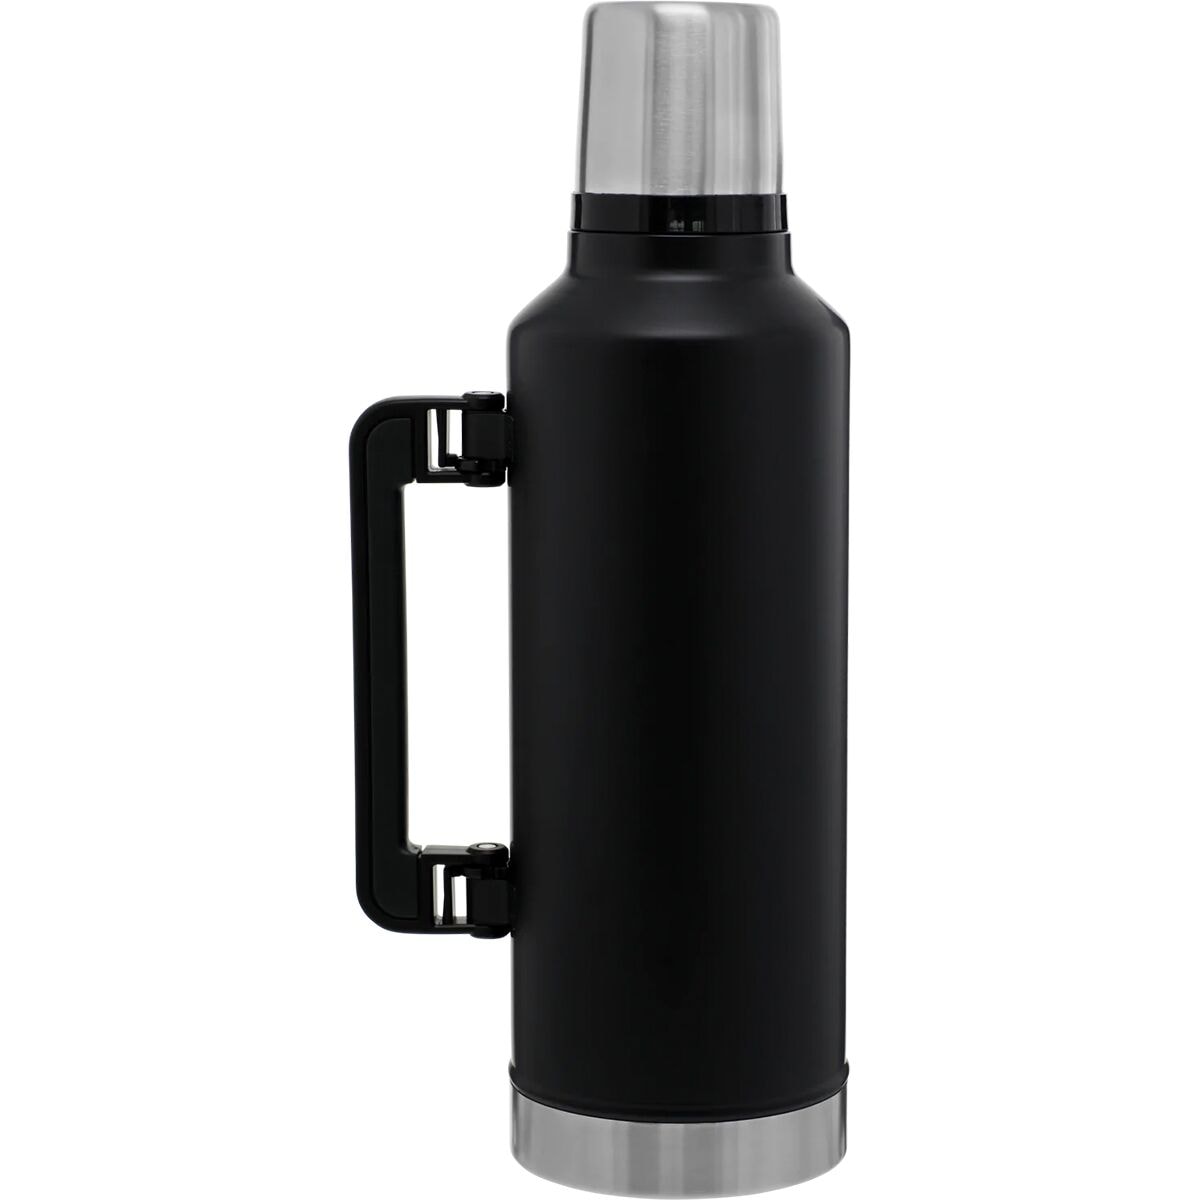  Stanley Classic Vacuum Bottle 1.4L (Matte Black) : Home &  Kitchen